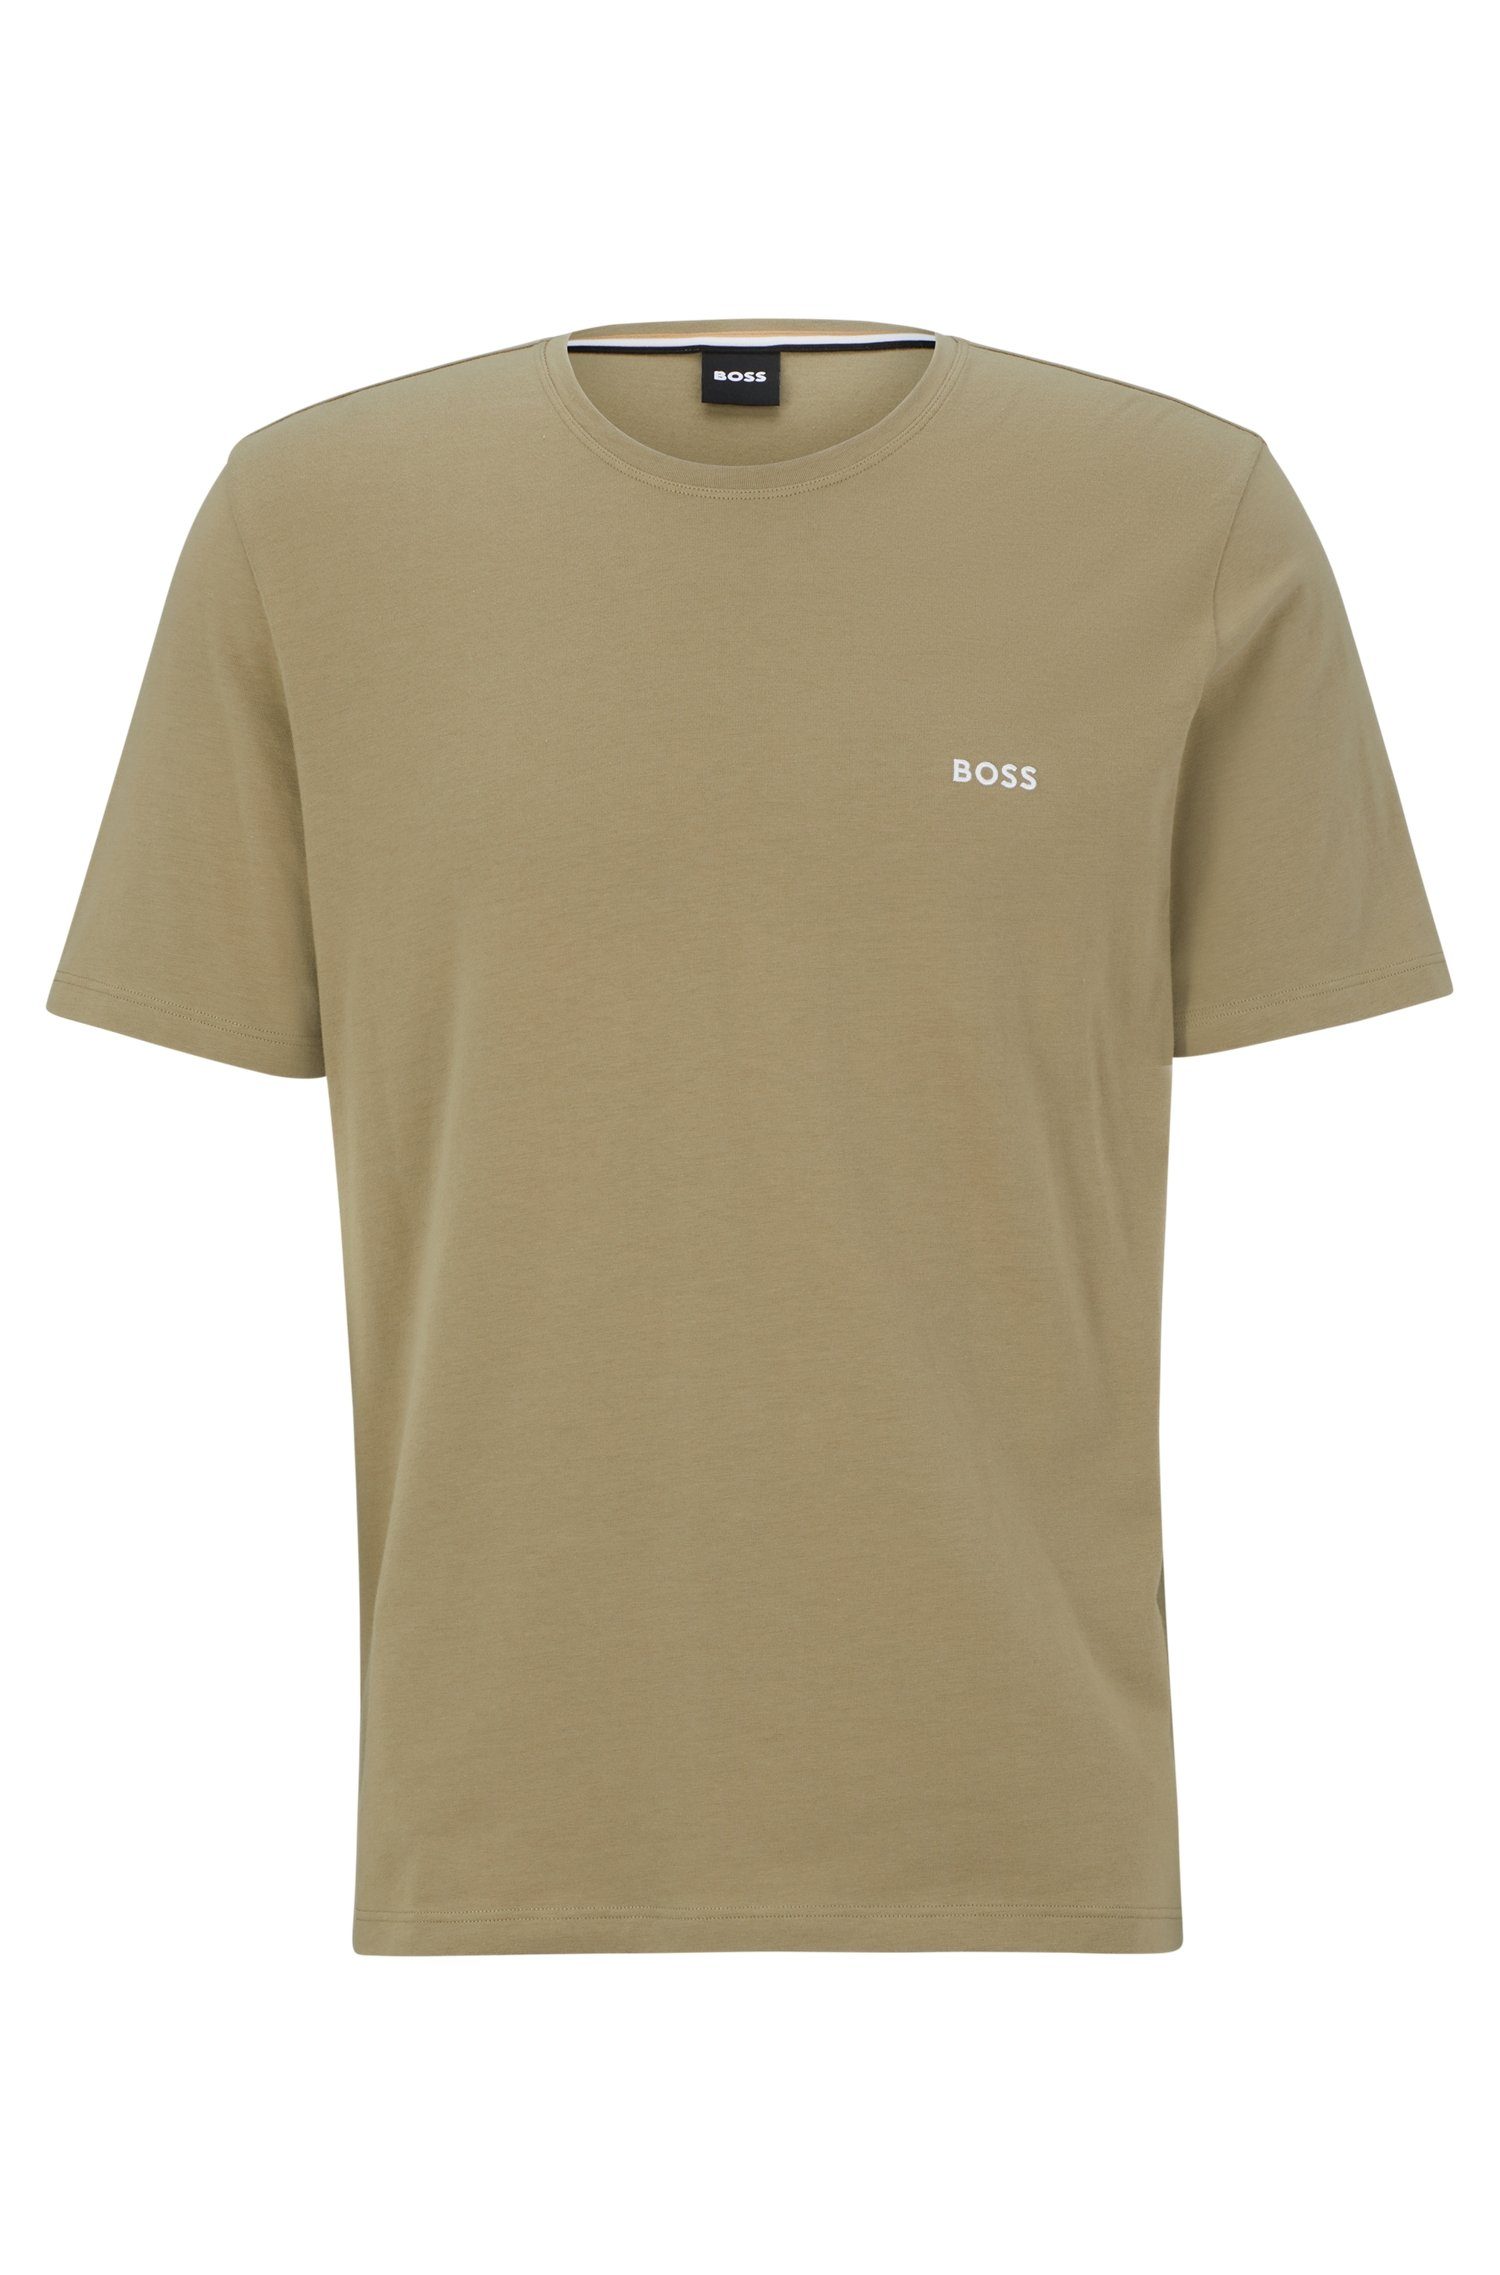 Stickerei auf der T-Shirt T-Shirt BOSS Light/Pastel_Green Mix&Match R Mit Brust BOSS